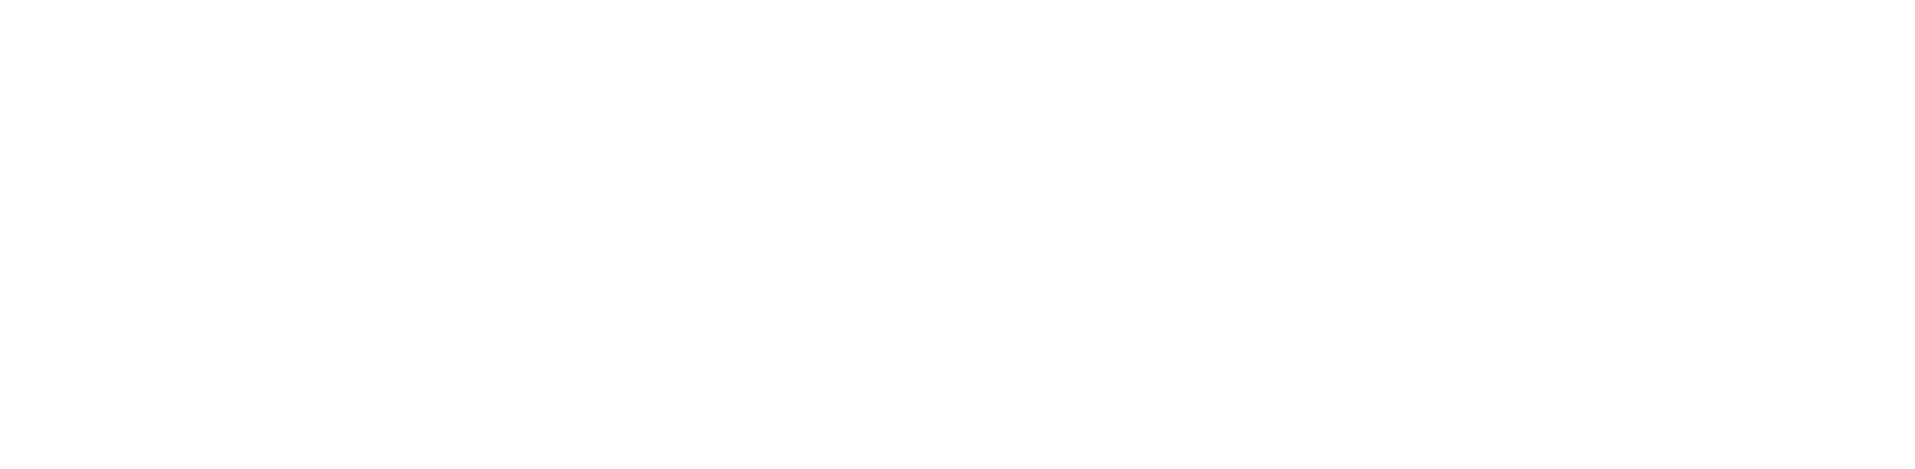 staff-millennium-logo-w